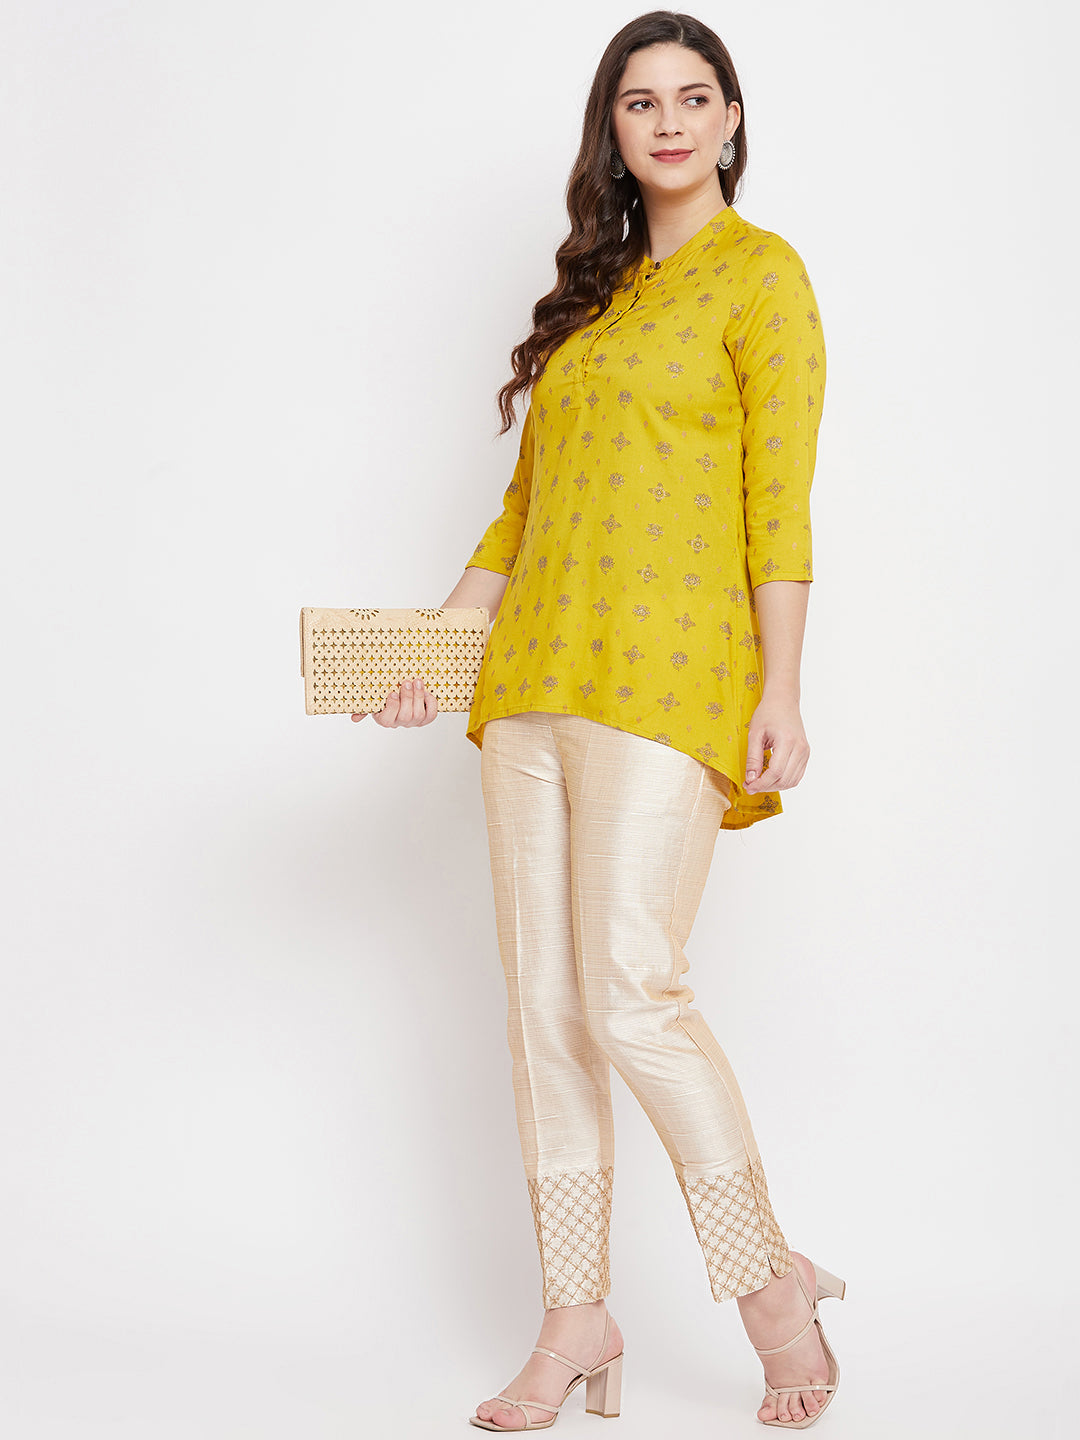 Clora Light Fawn Hem Design Silk Trouser